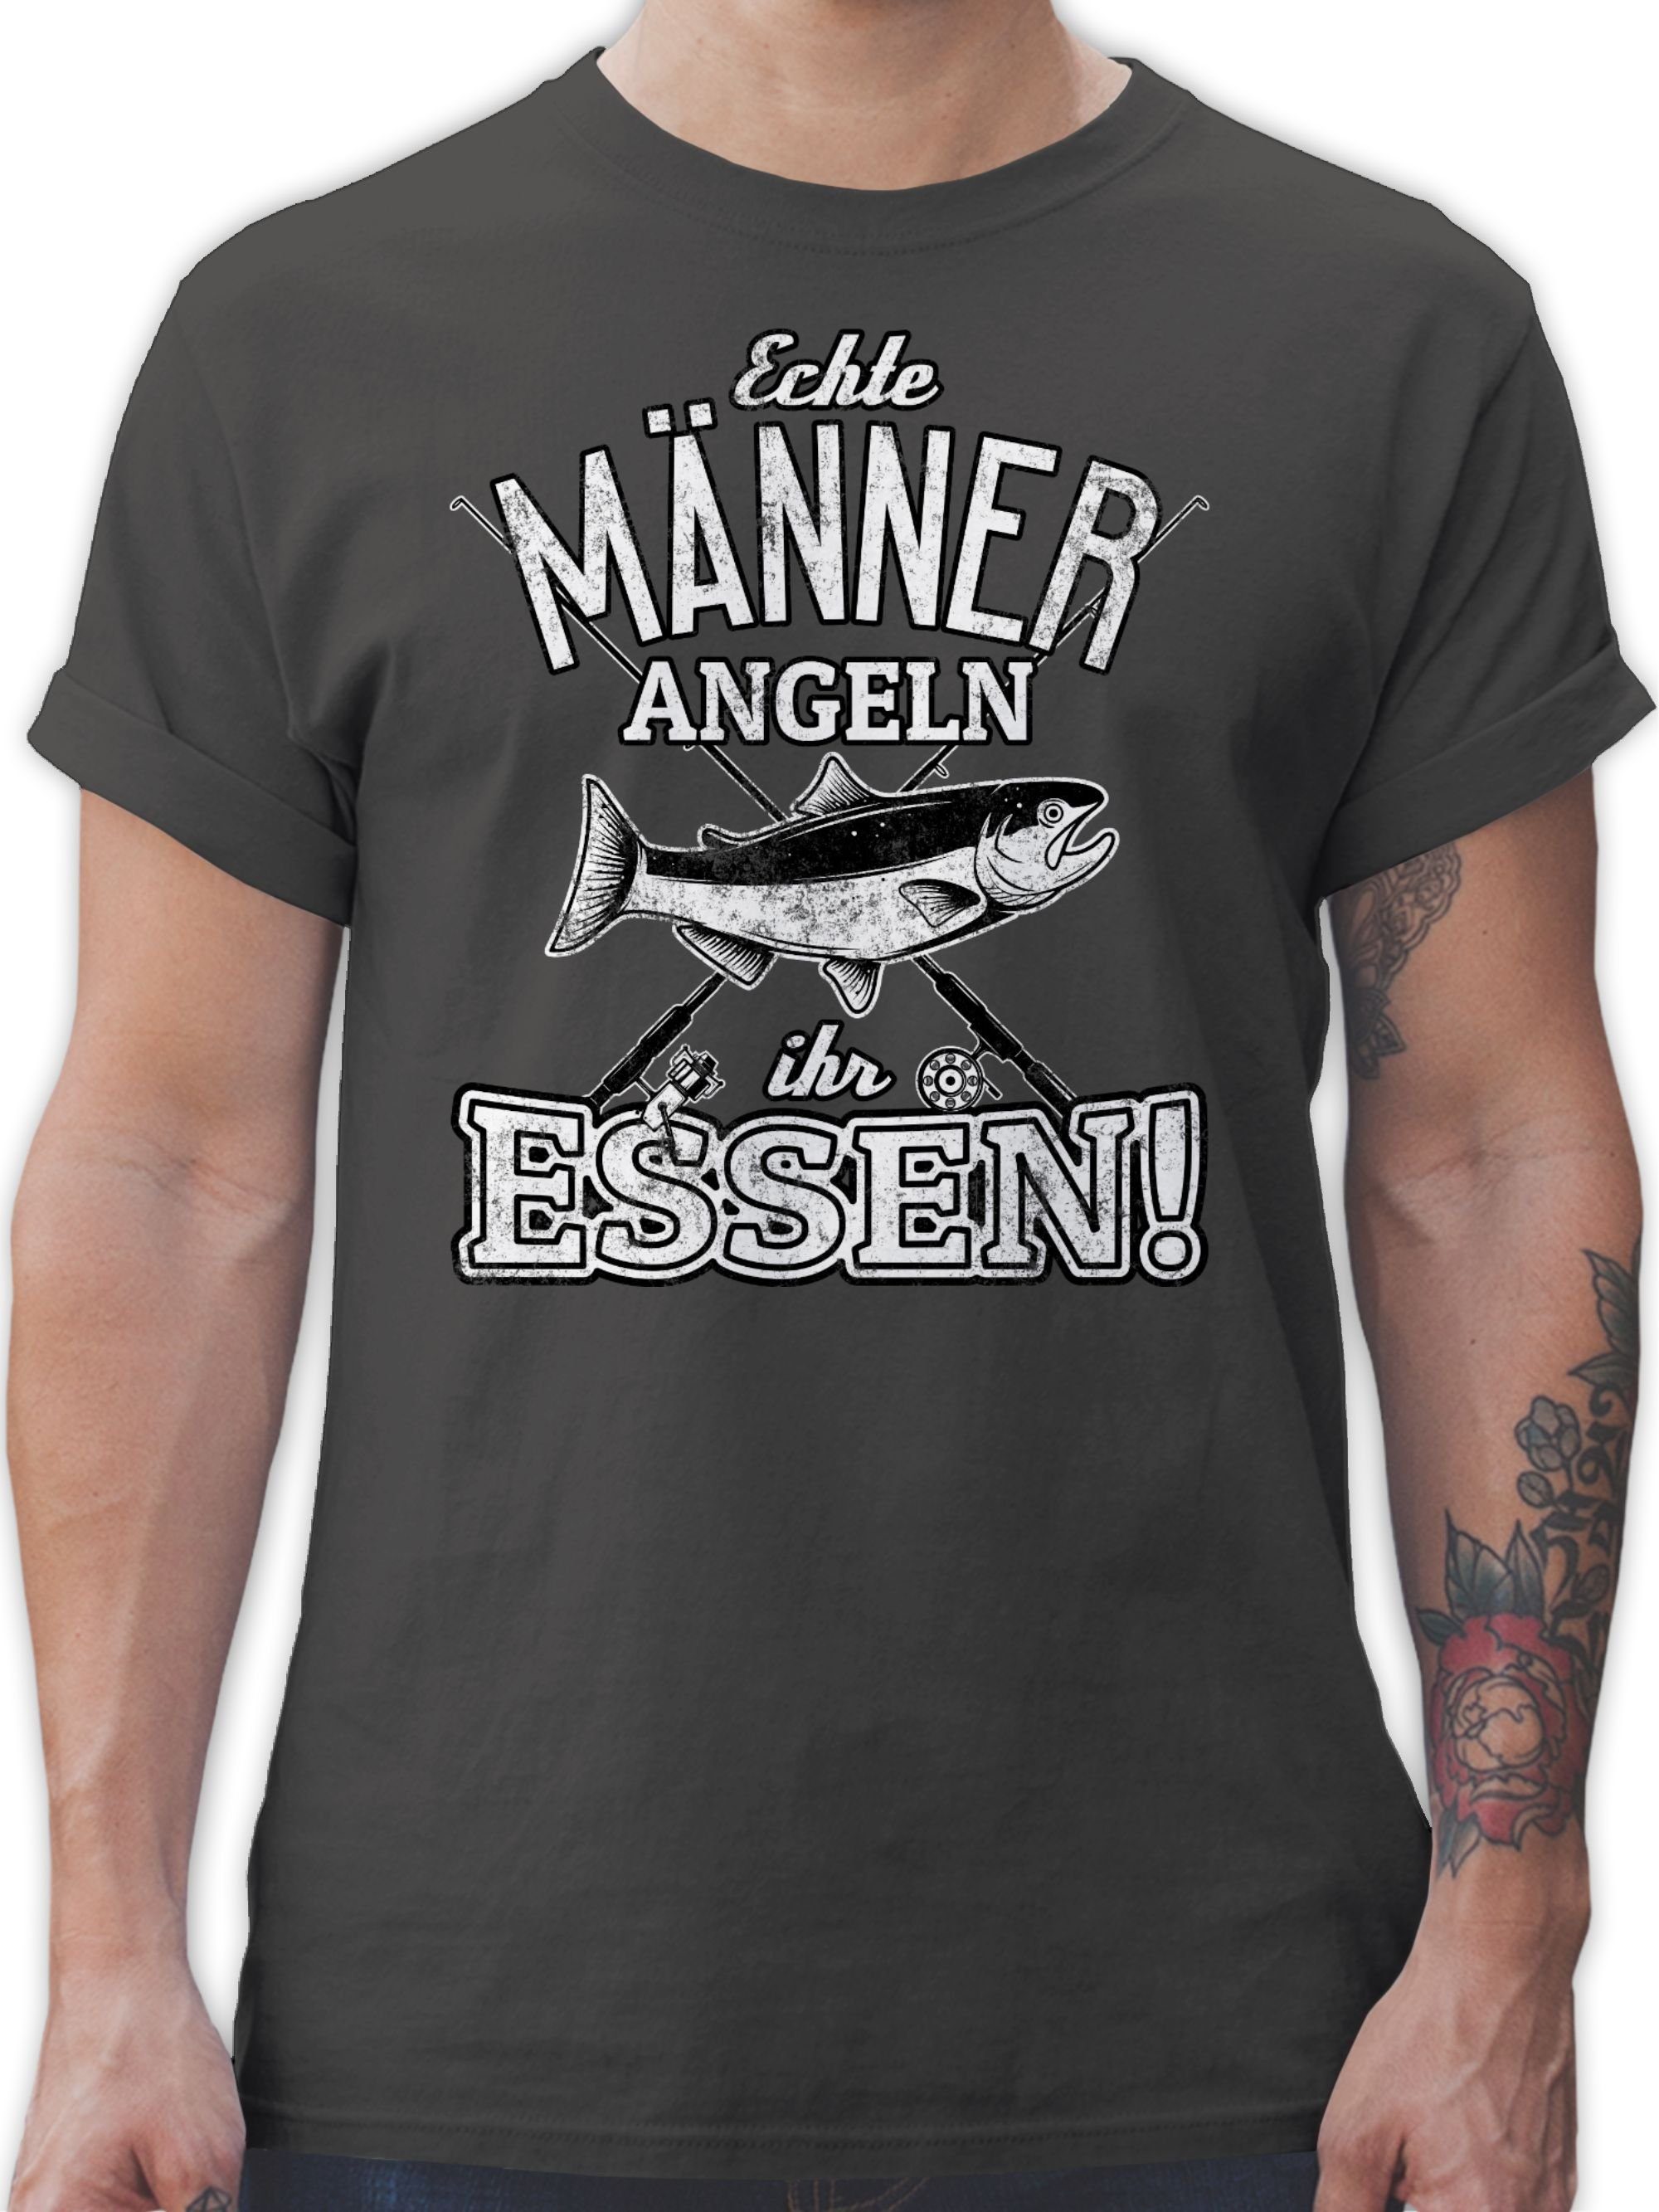 angeln Männer Angler Echte Essen 03 Shirtracer T-Shirt Dunkelgrau Geschenke ihr